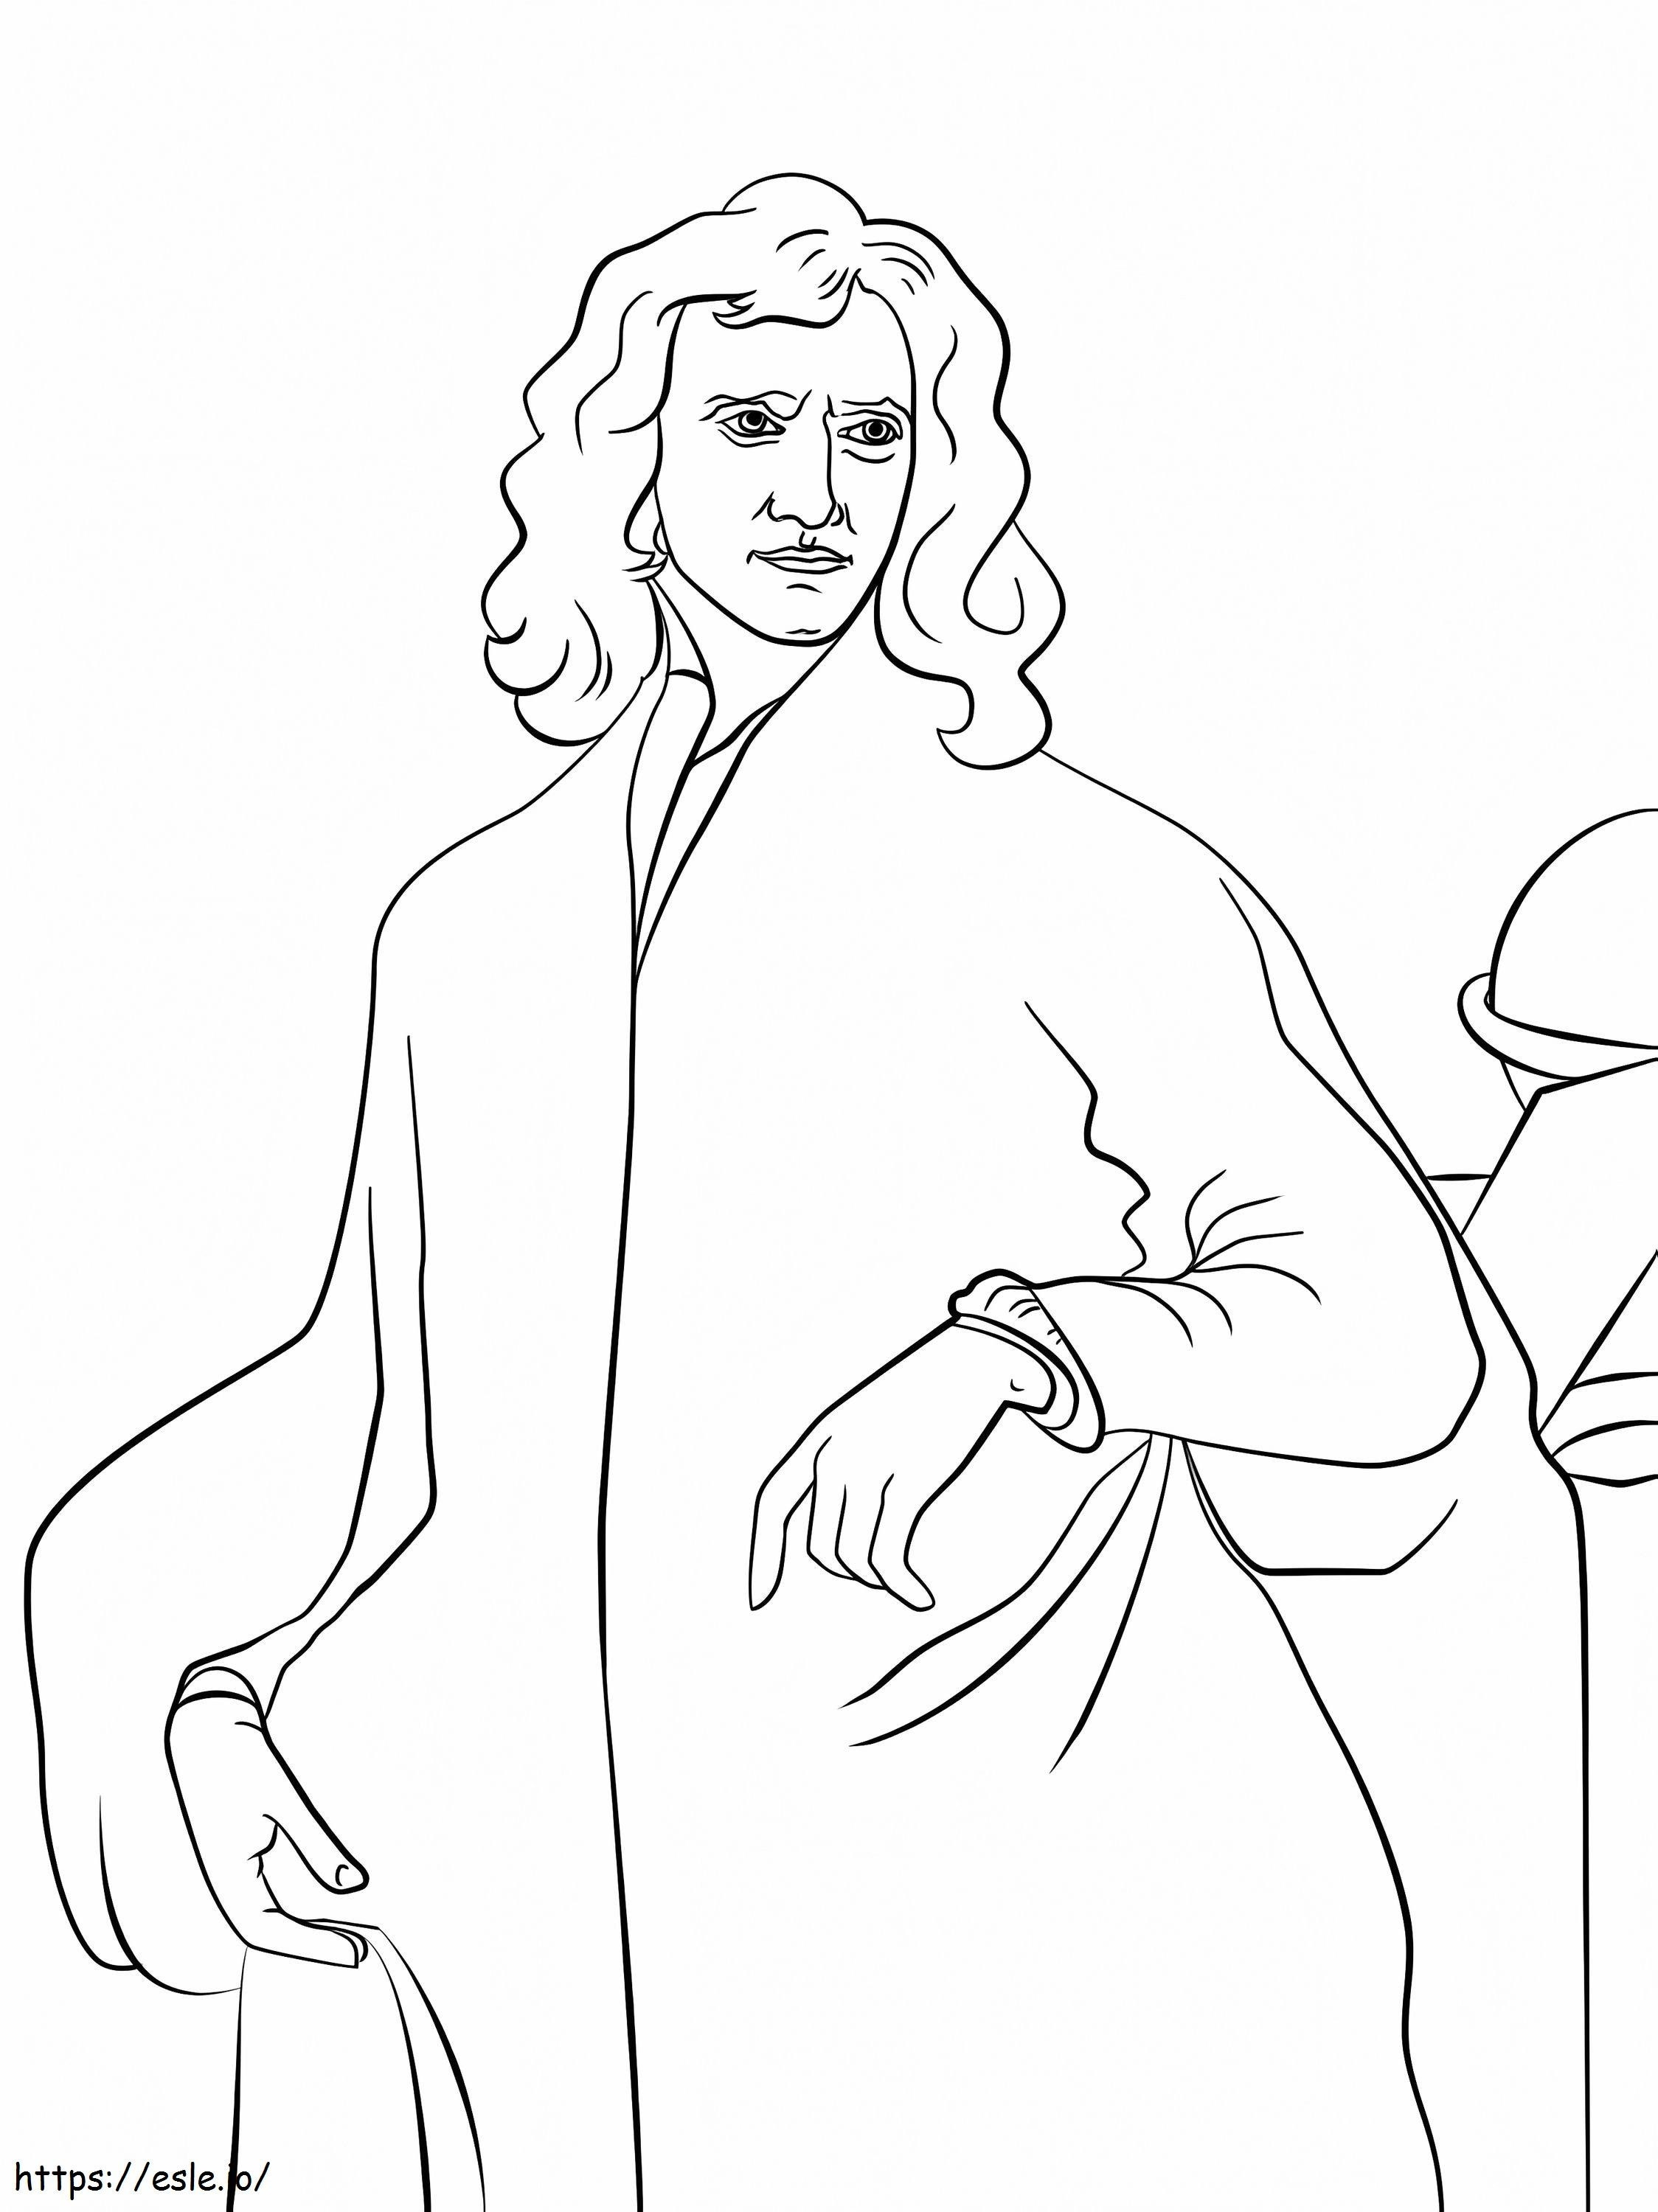 Coloriage Monsieur Isaac Newton à imprimer dessin